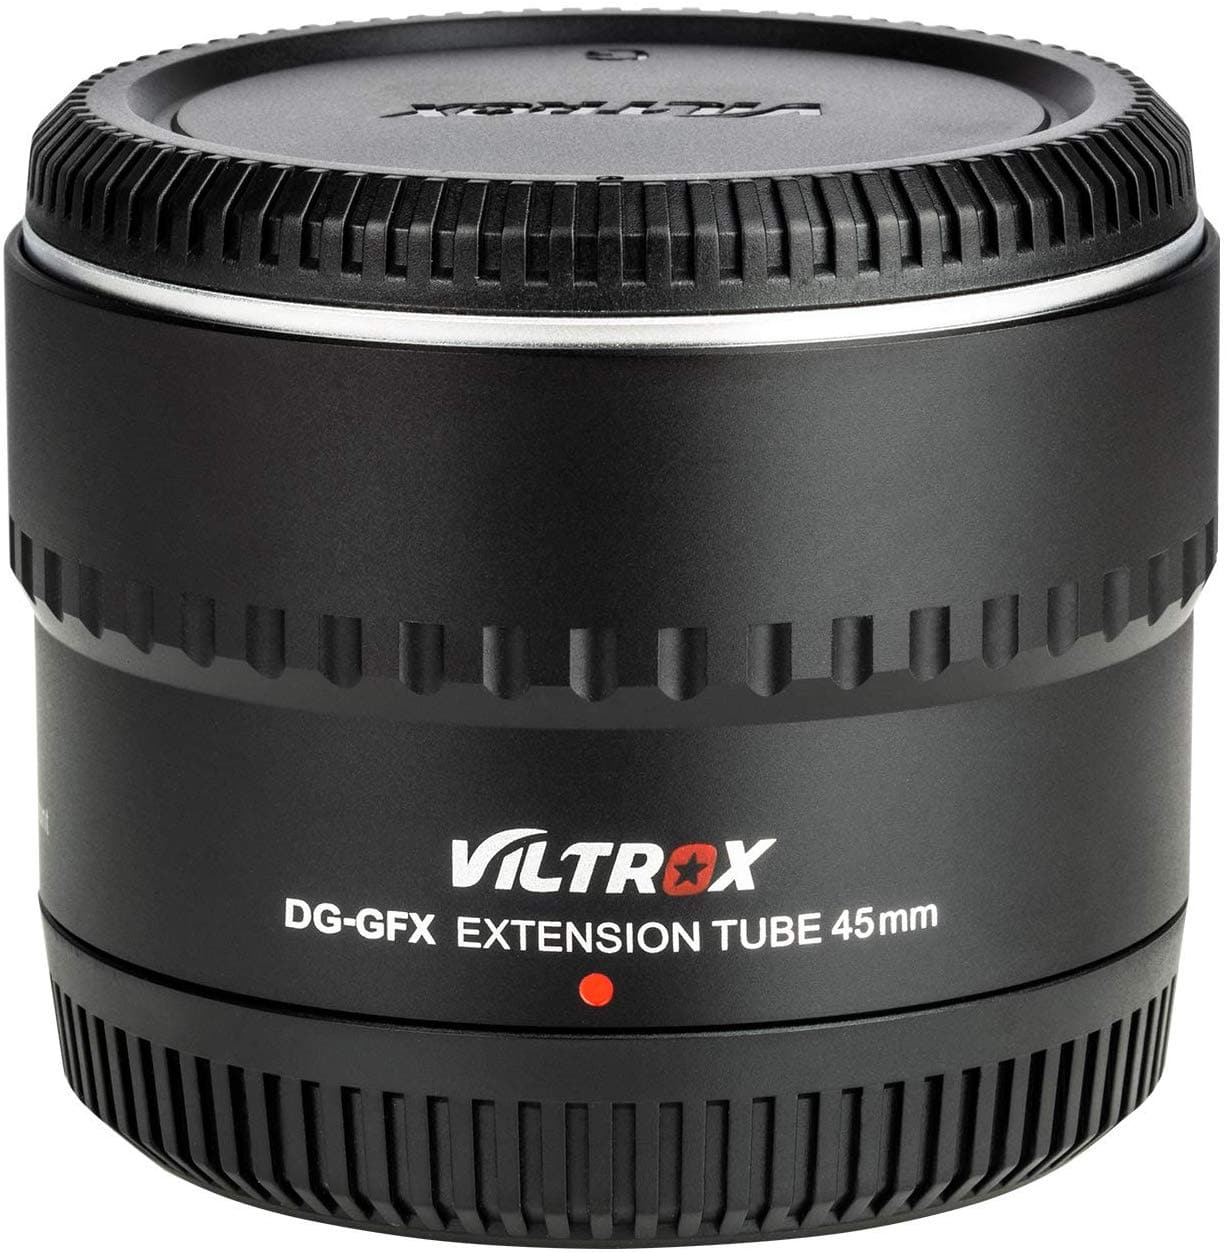 VILTROX DG-GFX 45mm Extension Tube for Fuji GFX-Mount med-Format Cameras FUJIFILM GFX50S/GFX50R